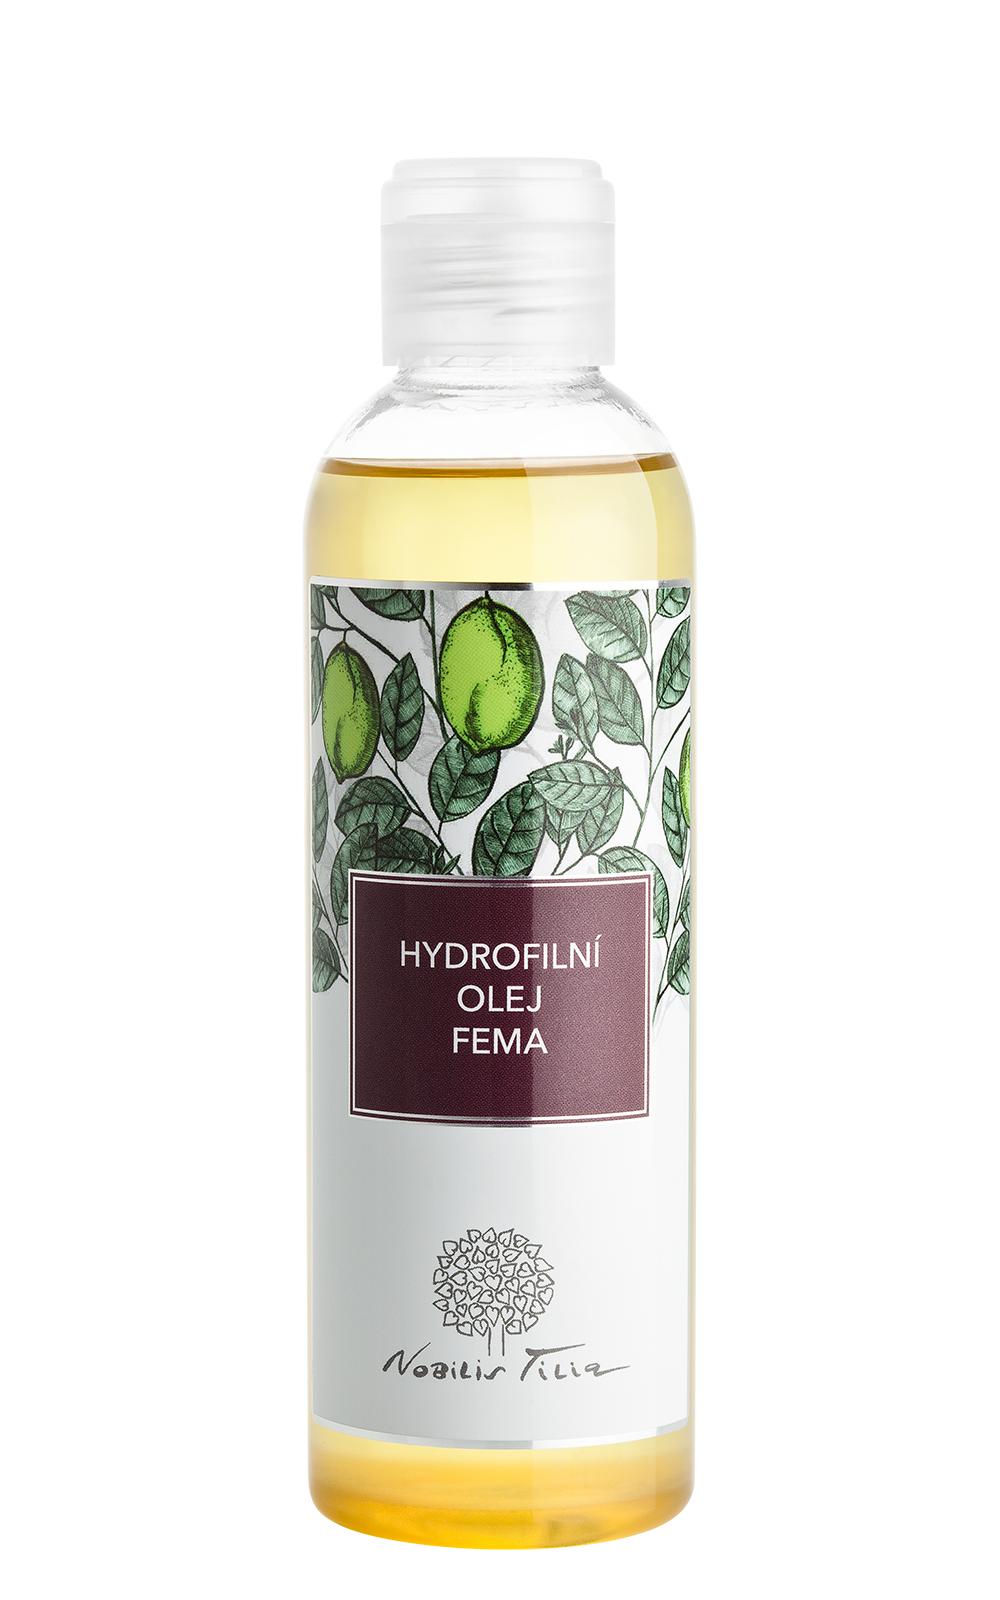 Hydrofilný olej fema - 200